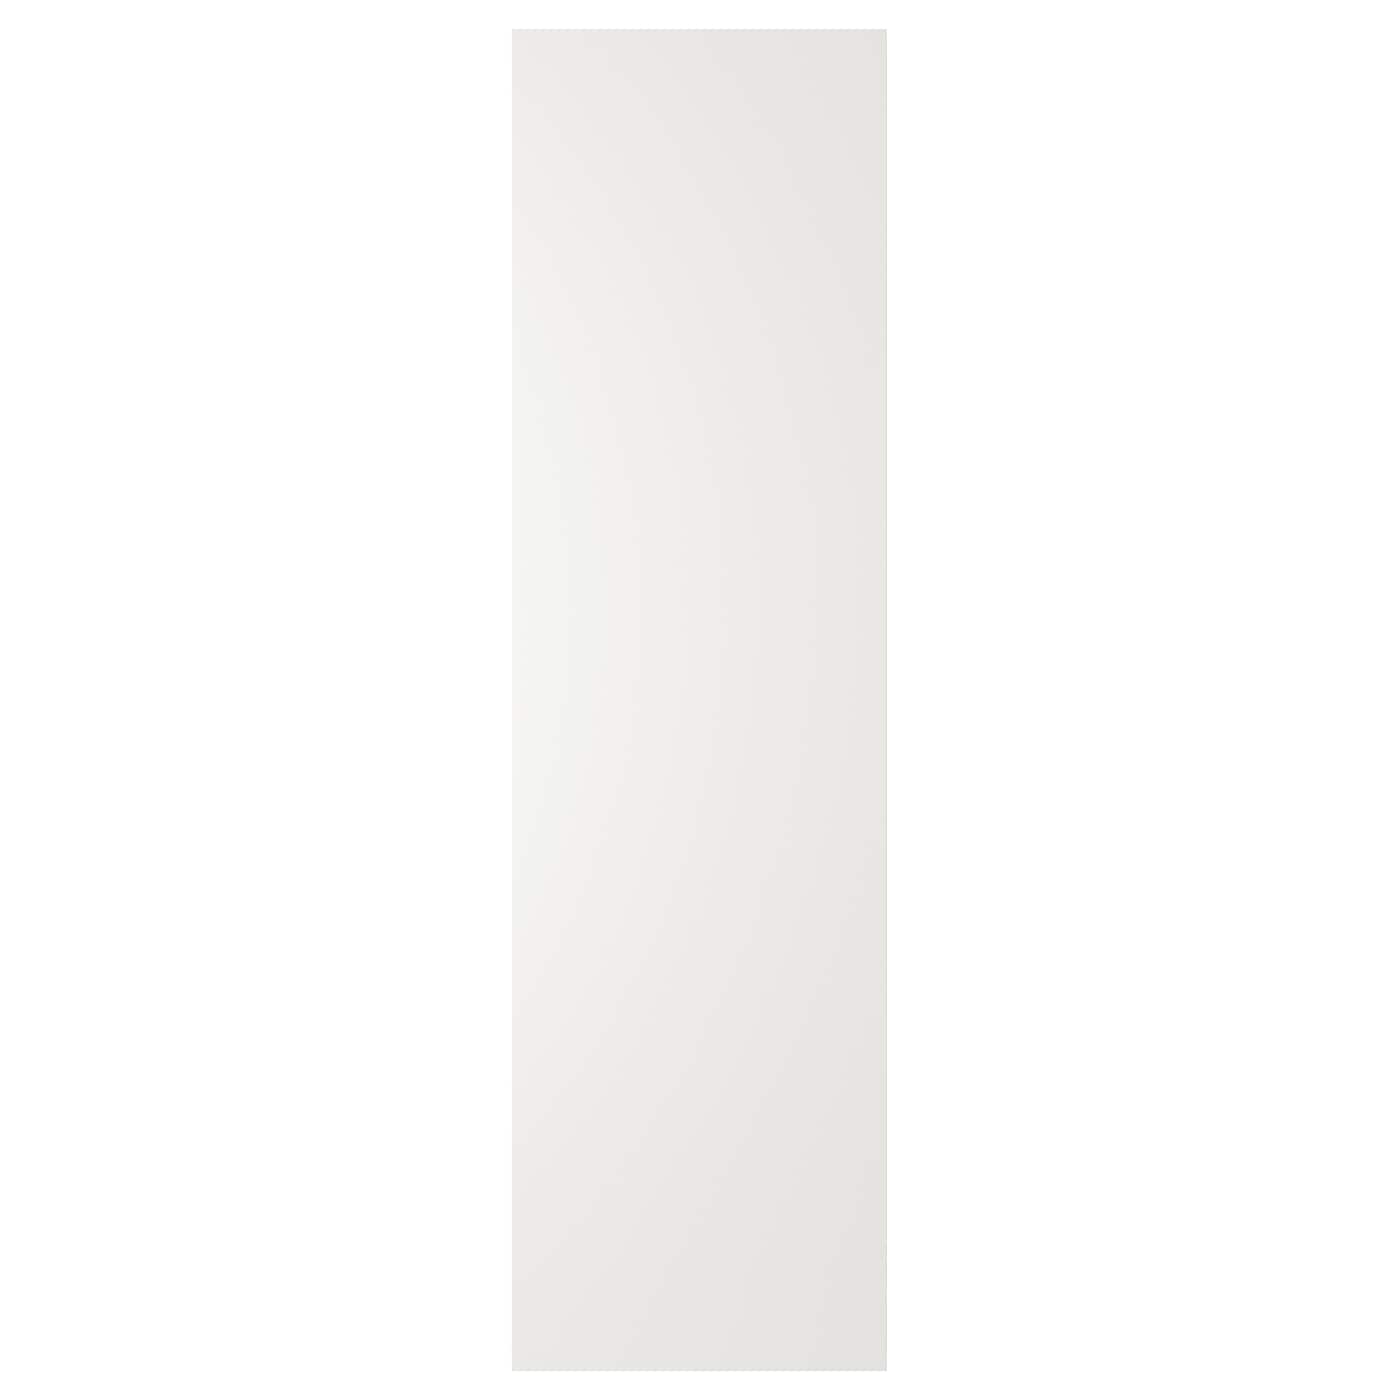 Накладная панель - IKEA STENSUND, 240х62 см, белый, СТЕНСУНД ИКЕА